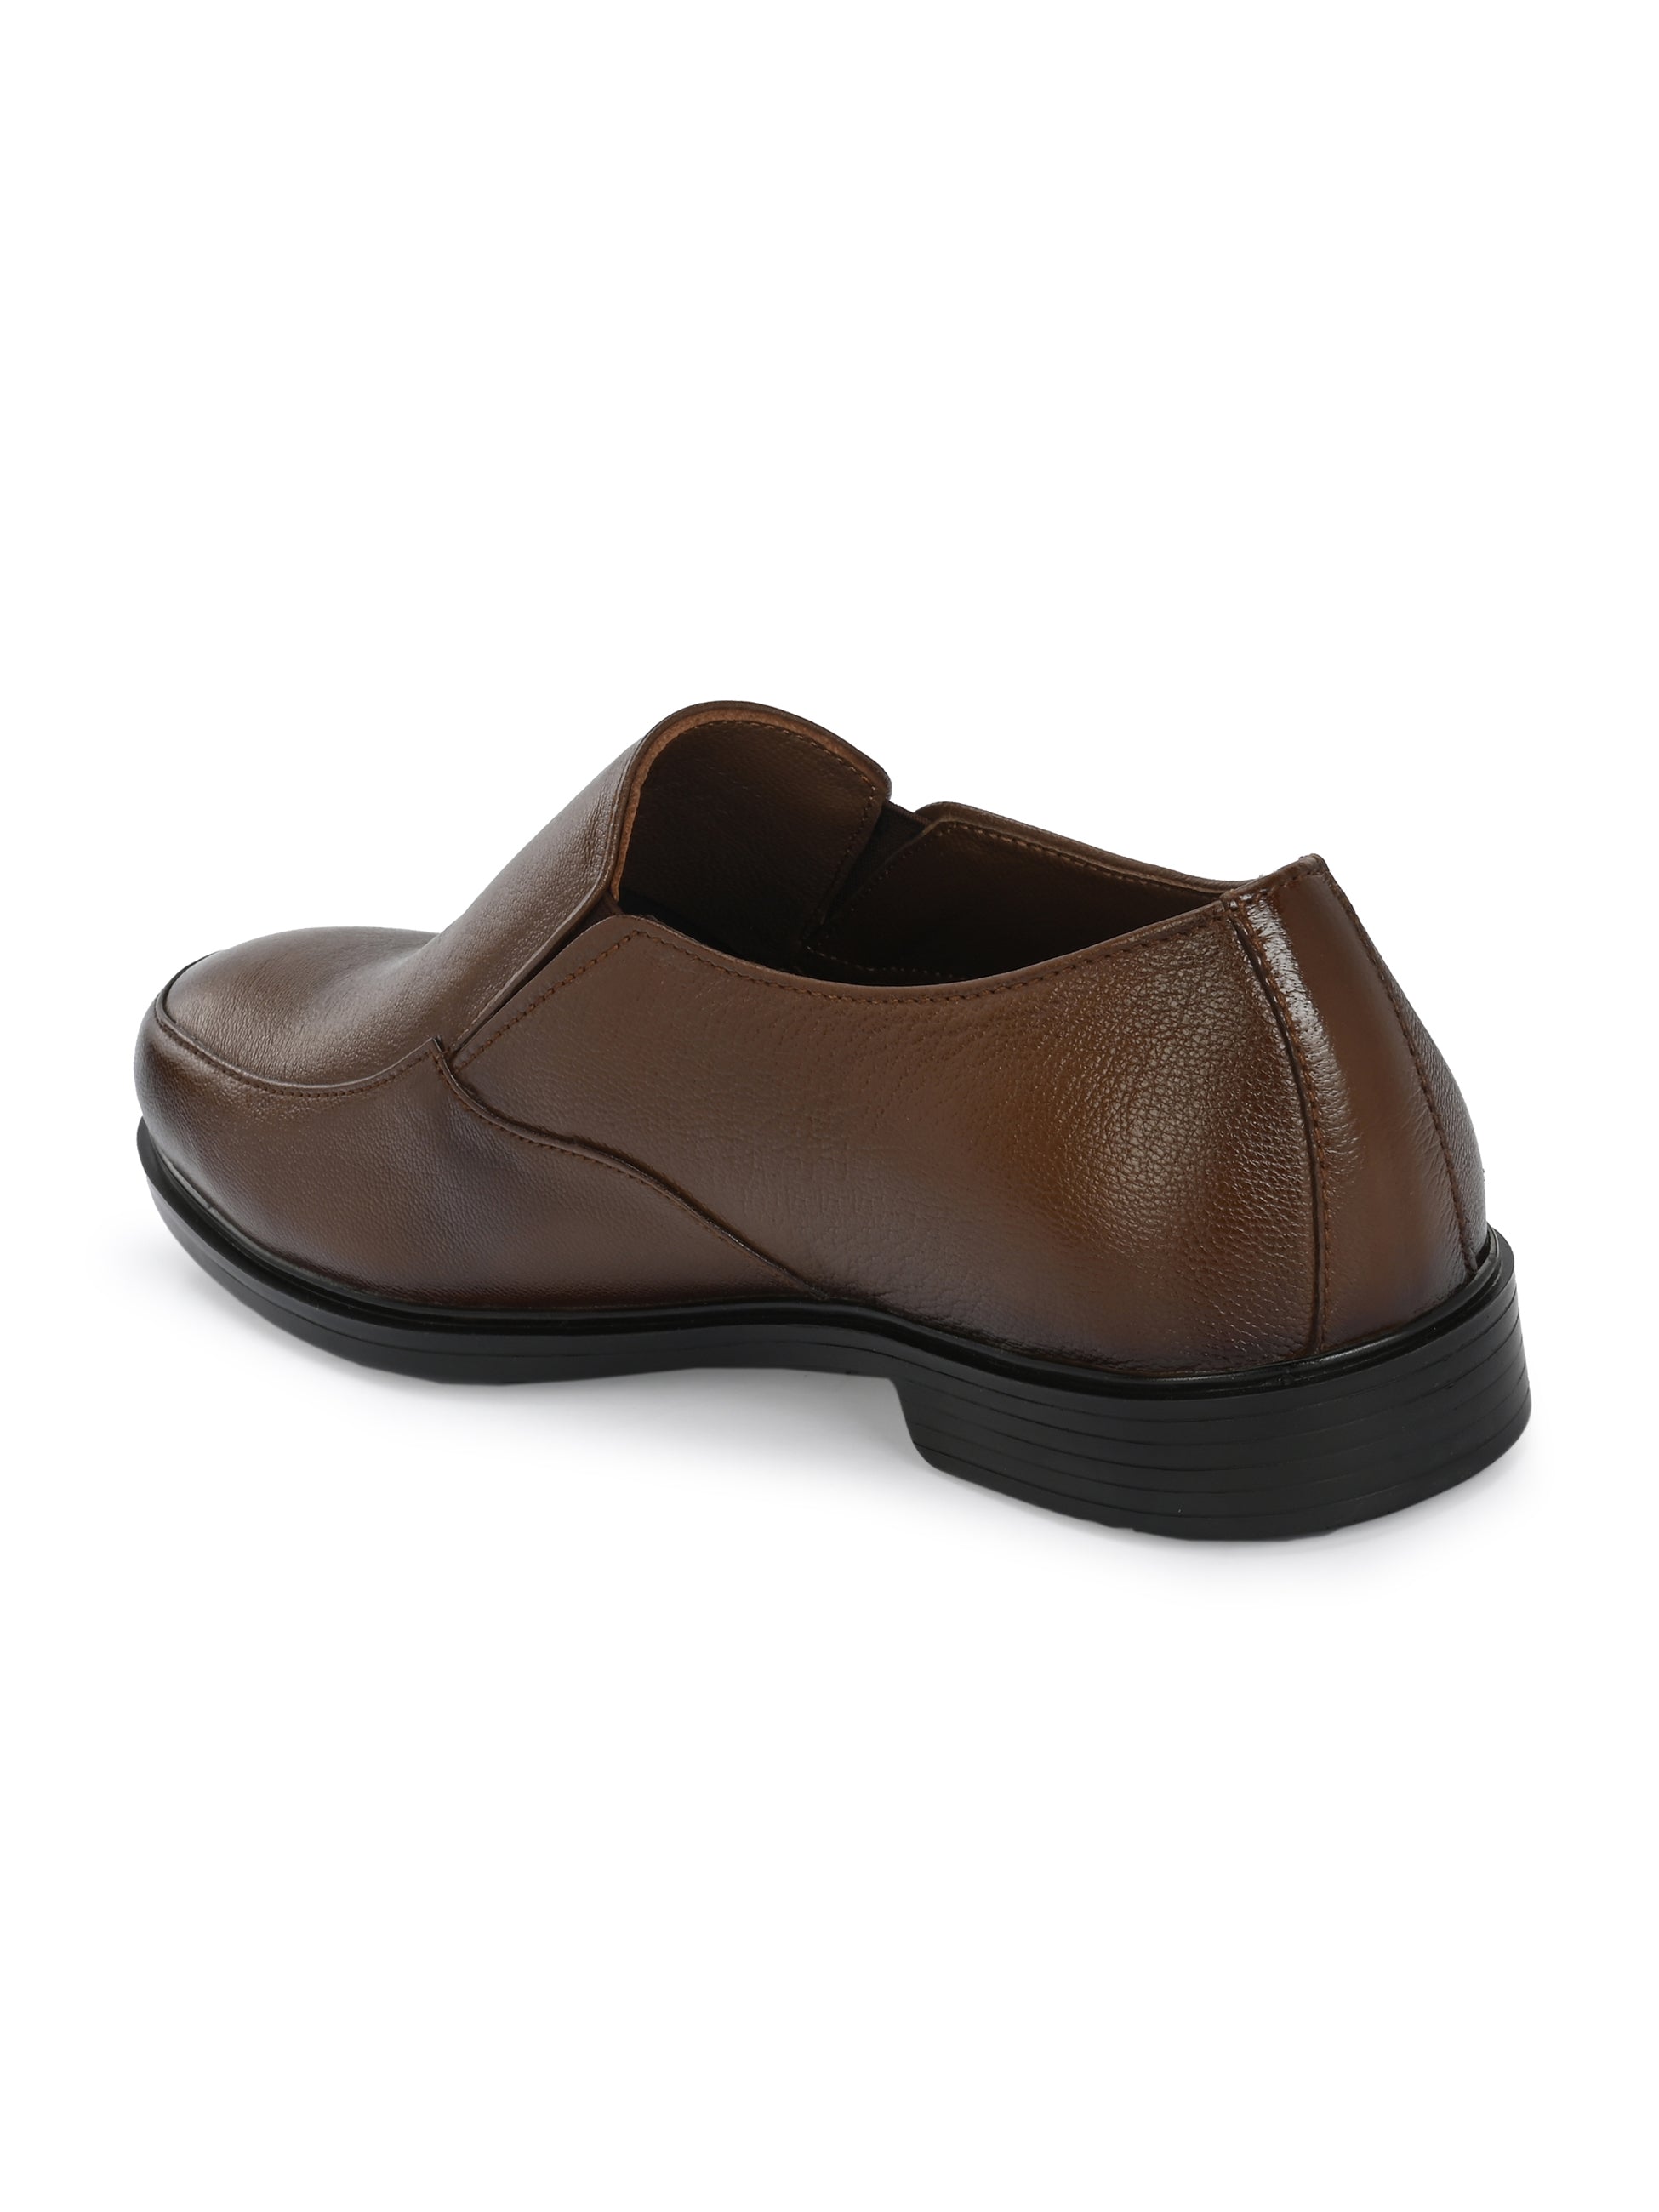 Egoss Formal Slip-On Shoes For Men